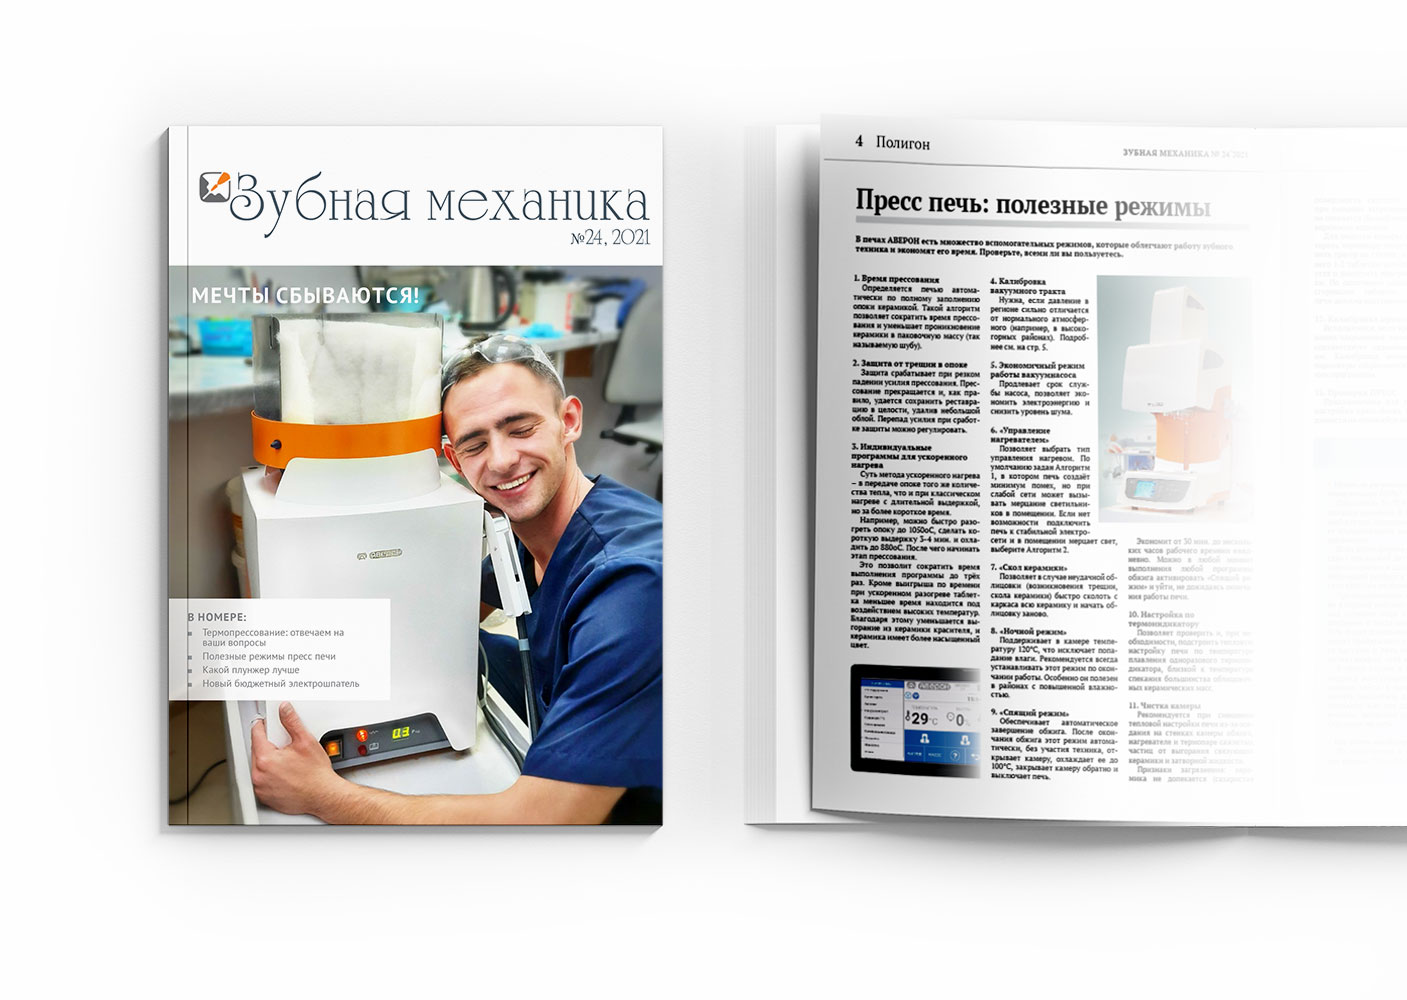 Вышел новый номер журнала "Зубная механика" 30.09 - АВЕРОН